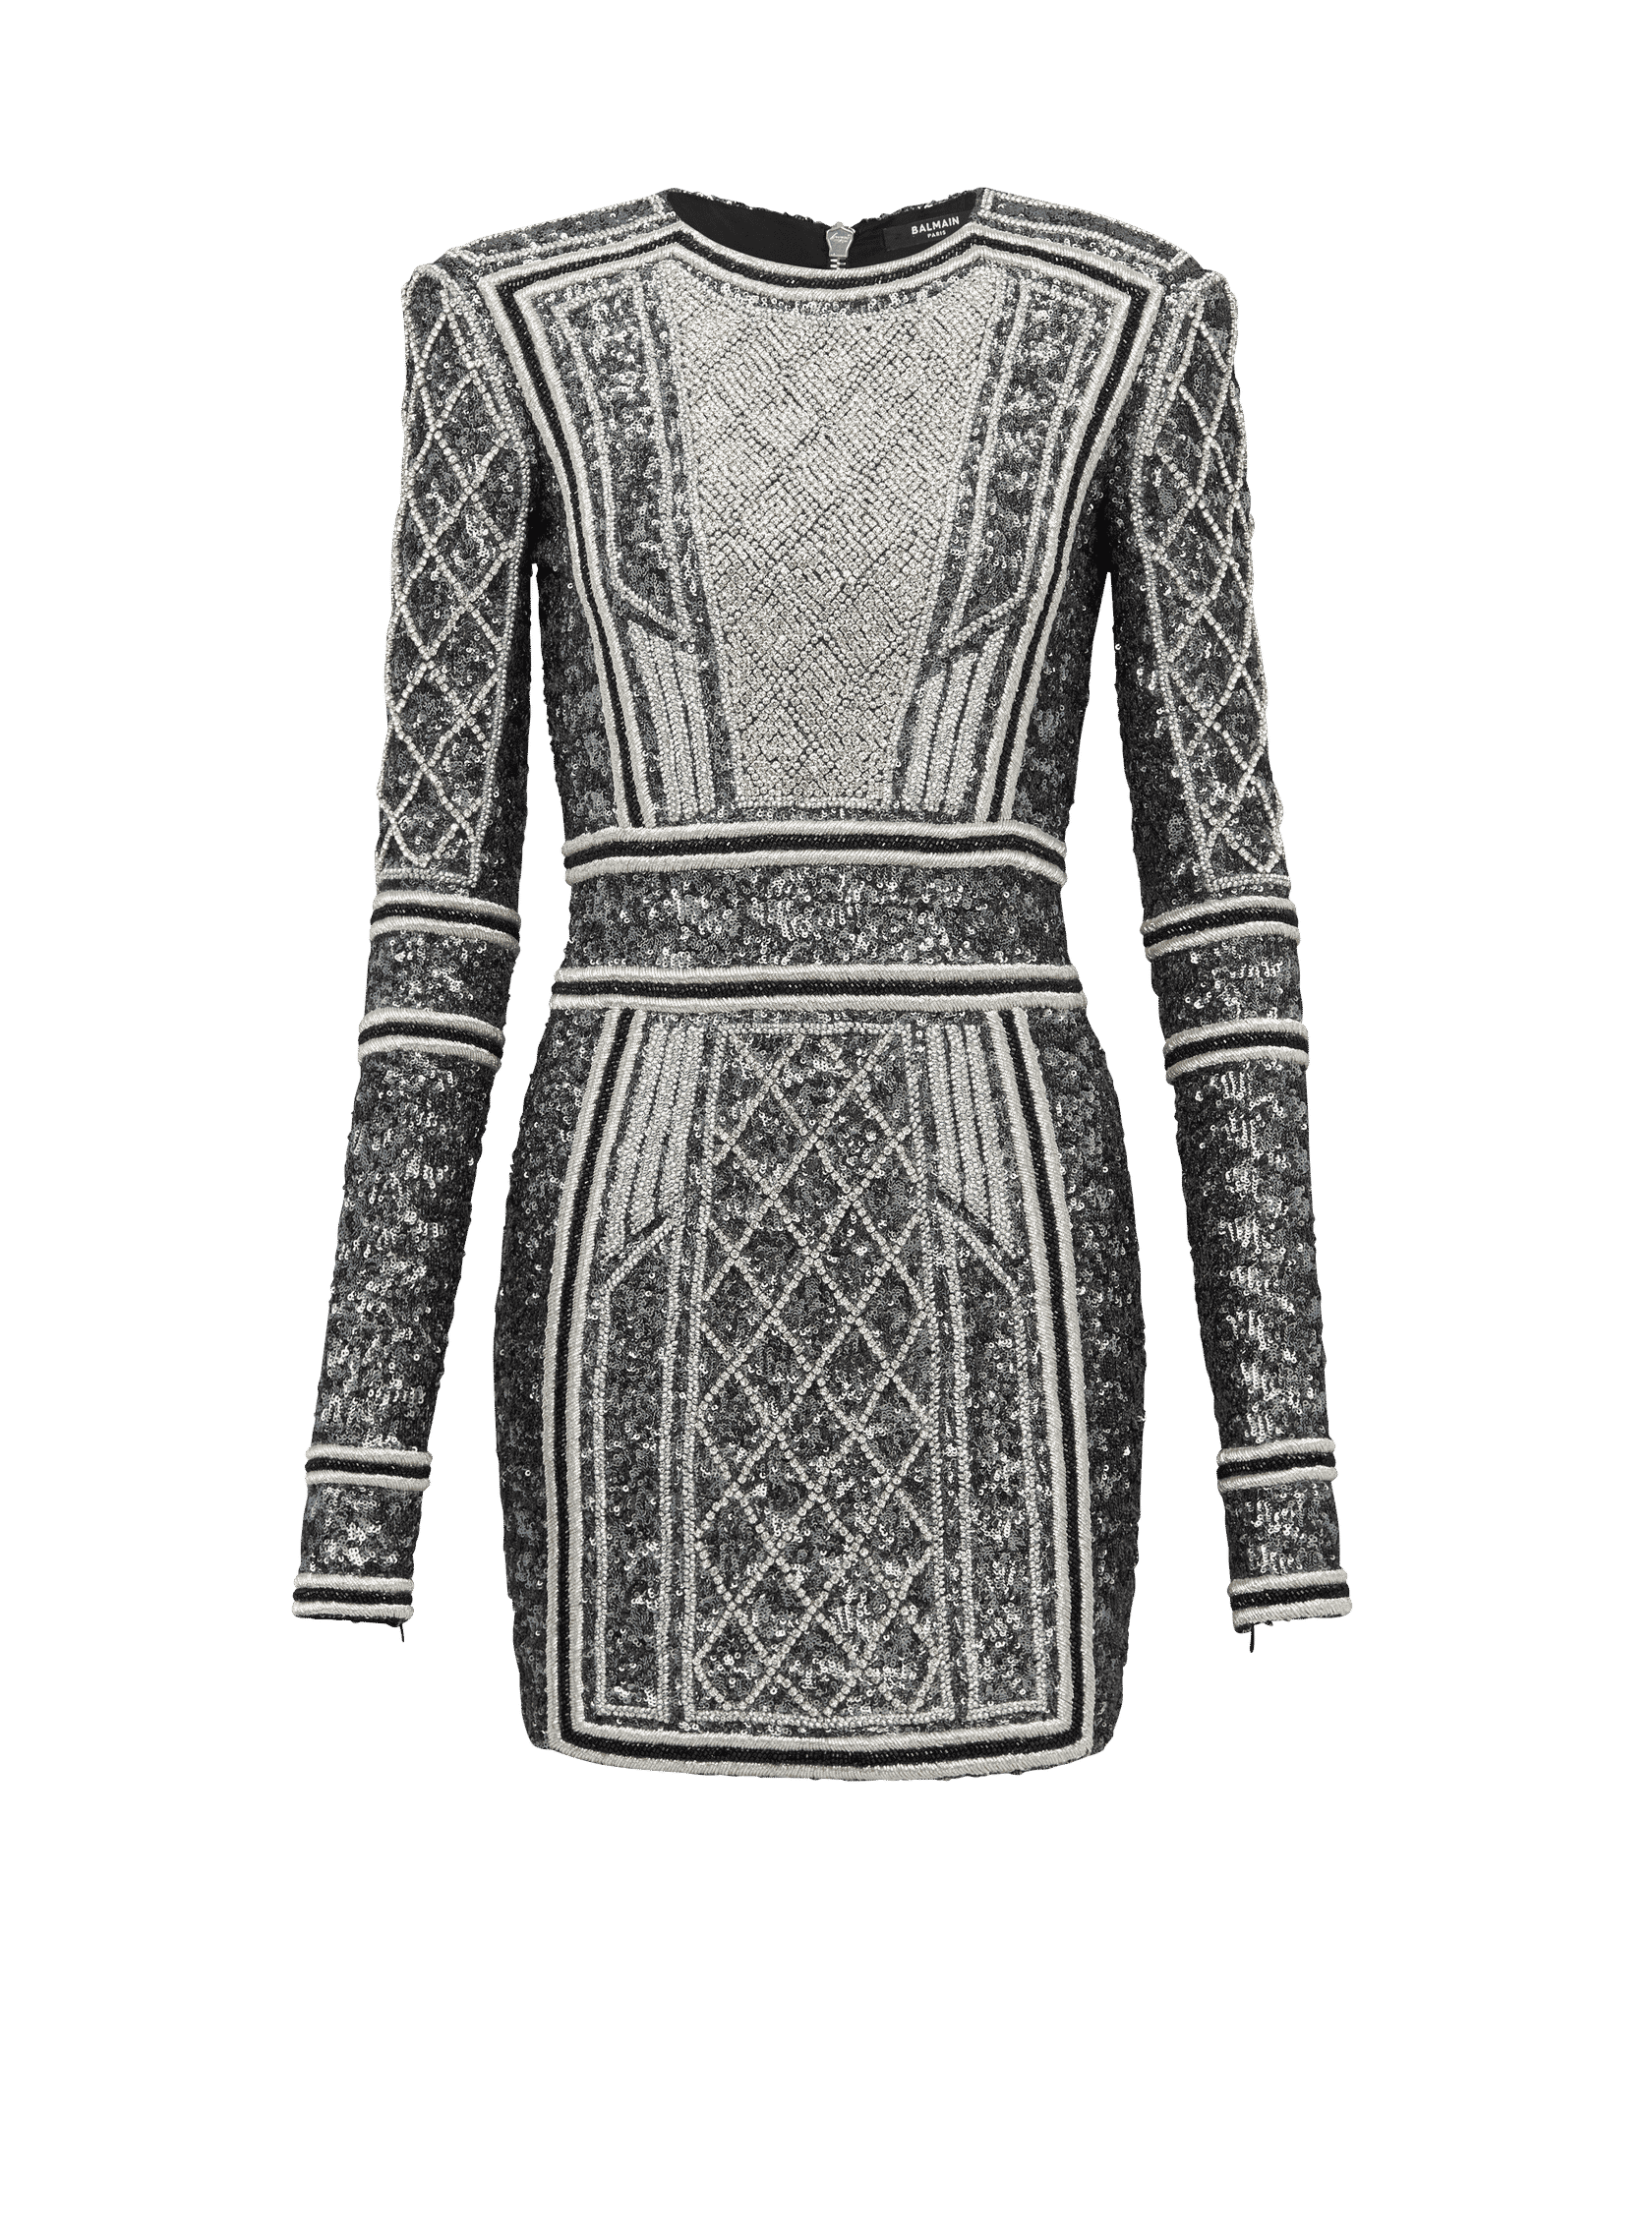 Balmain Short Embroidered Dress